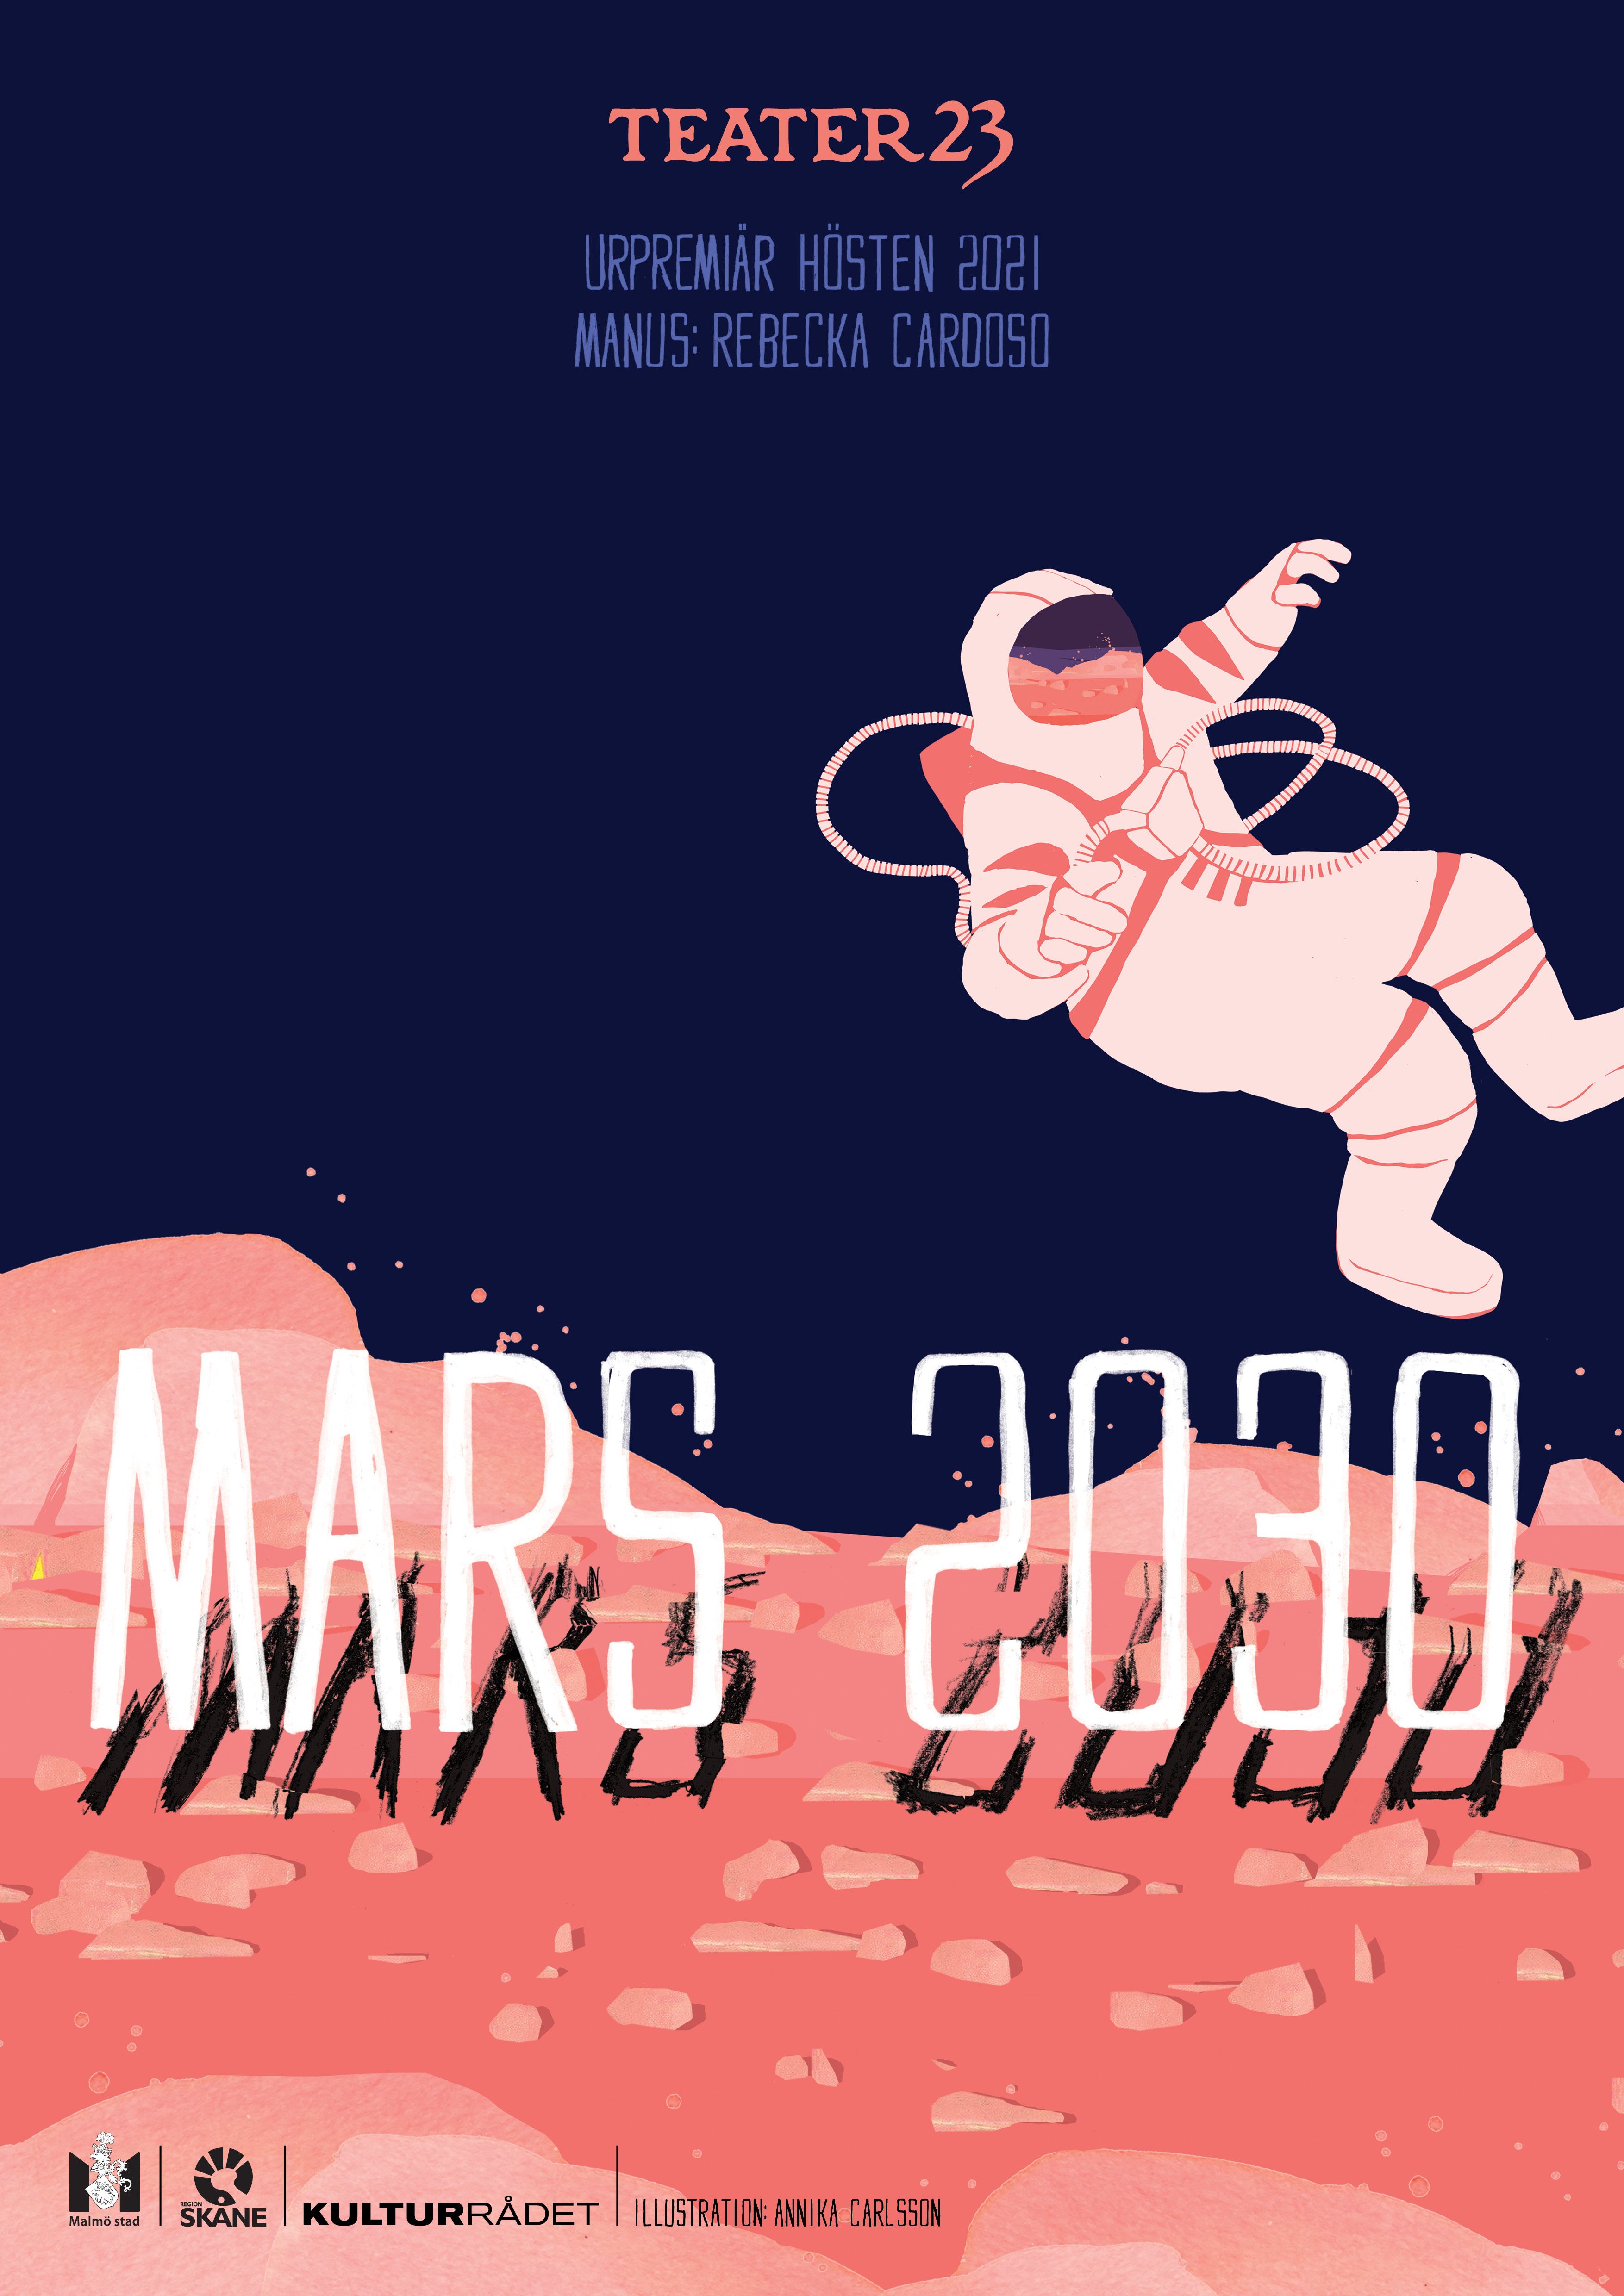 Bildlänk med information om Mars 2030